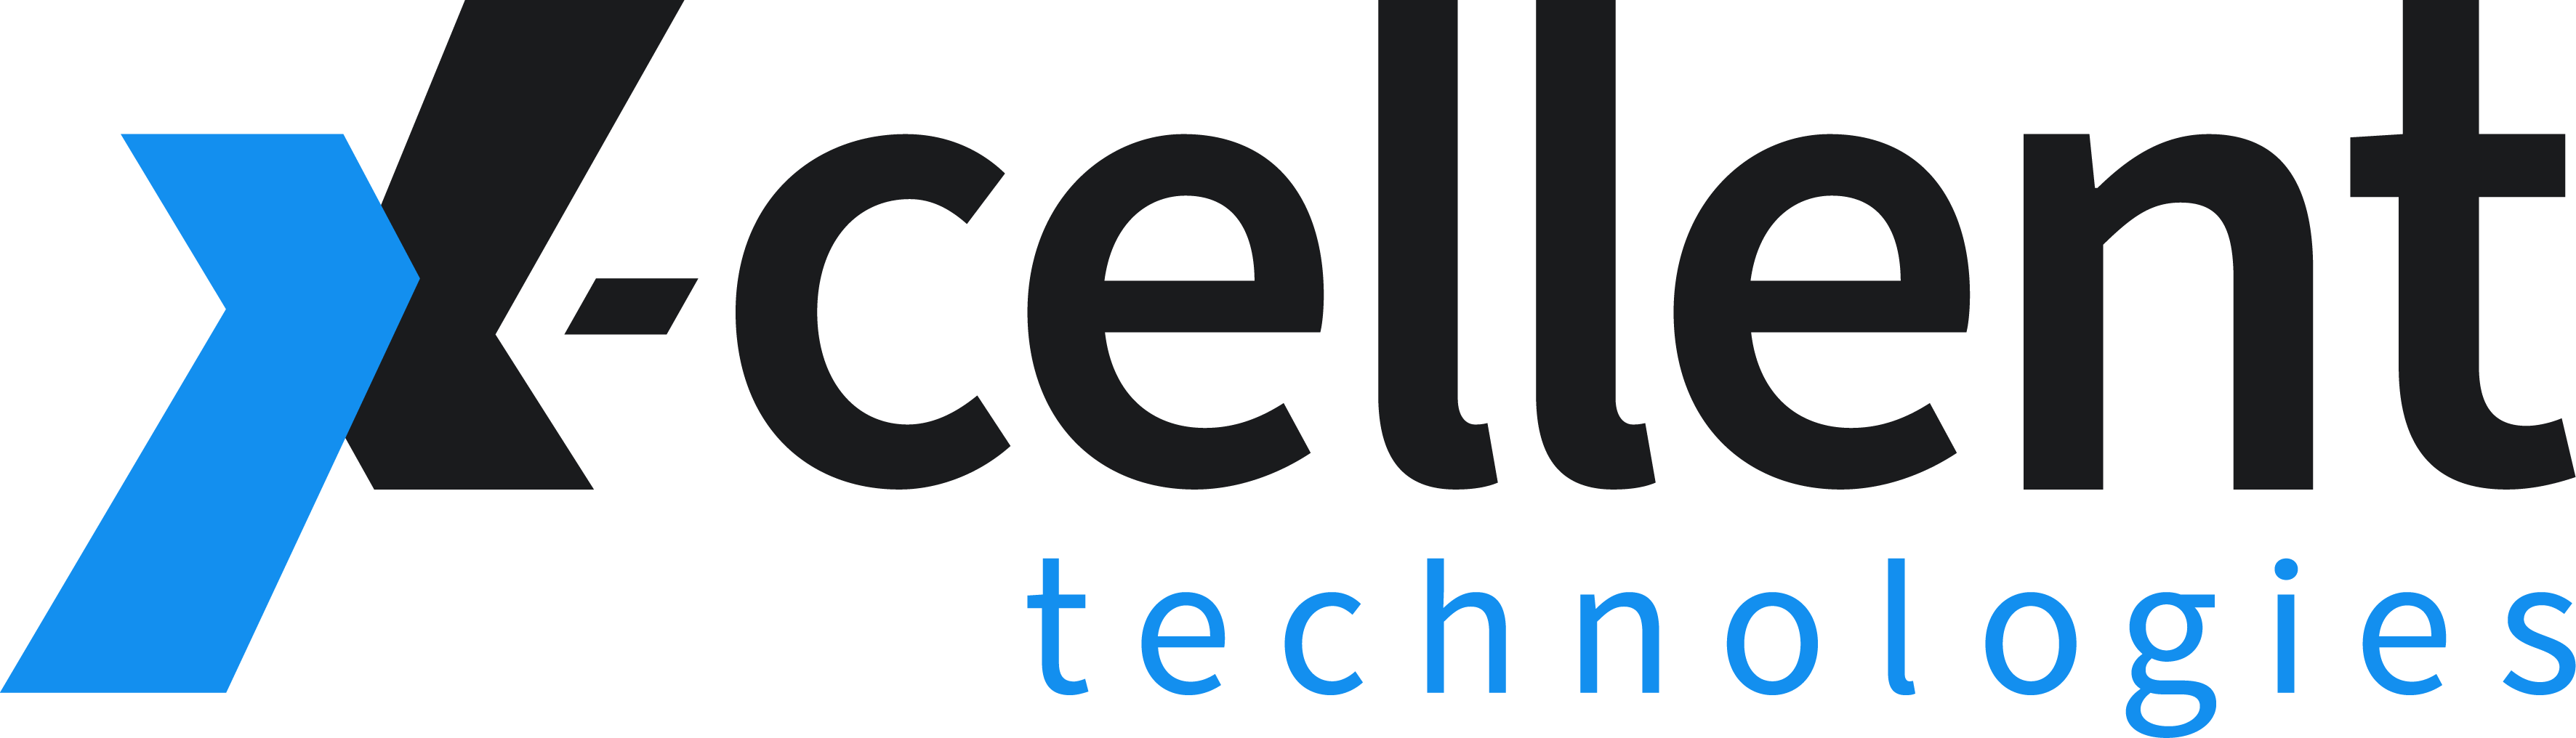 x-cellent technologies